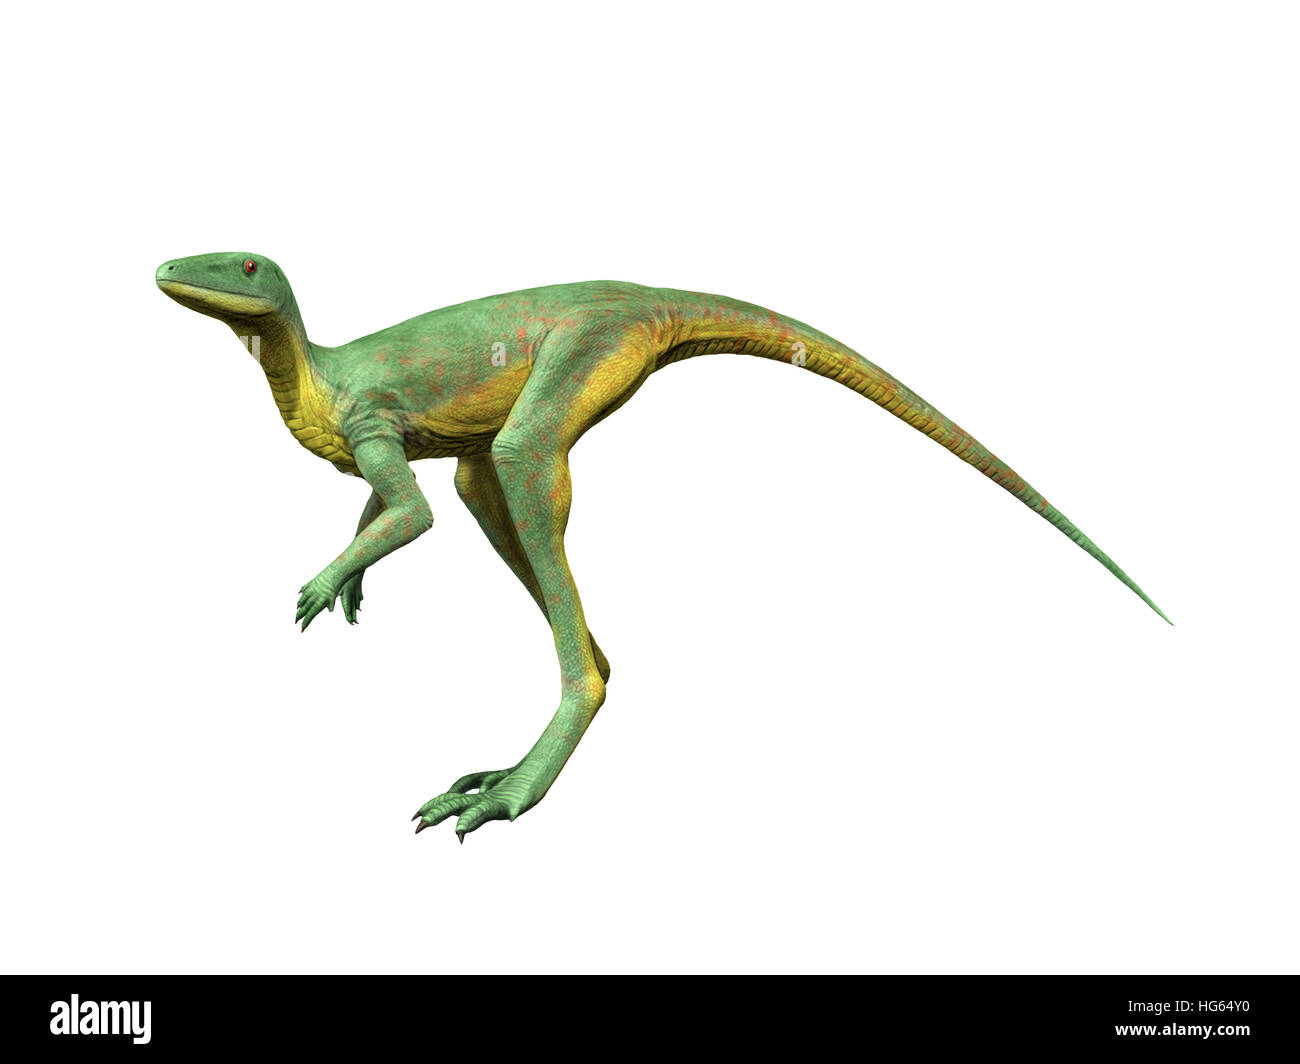 Lagerpeton ist eine ausgestorbene Dinosauromorph aus der mittleren Trias Argentiniens. Stockfoto